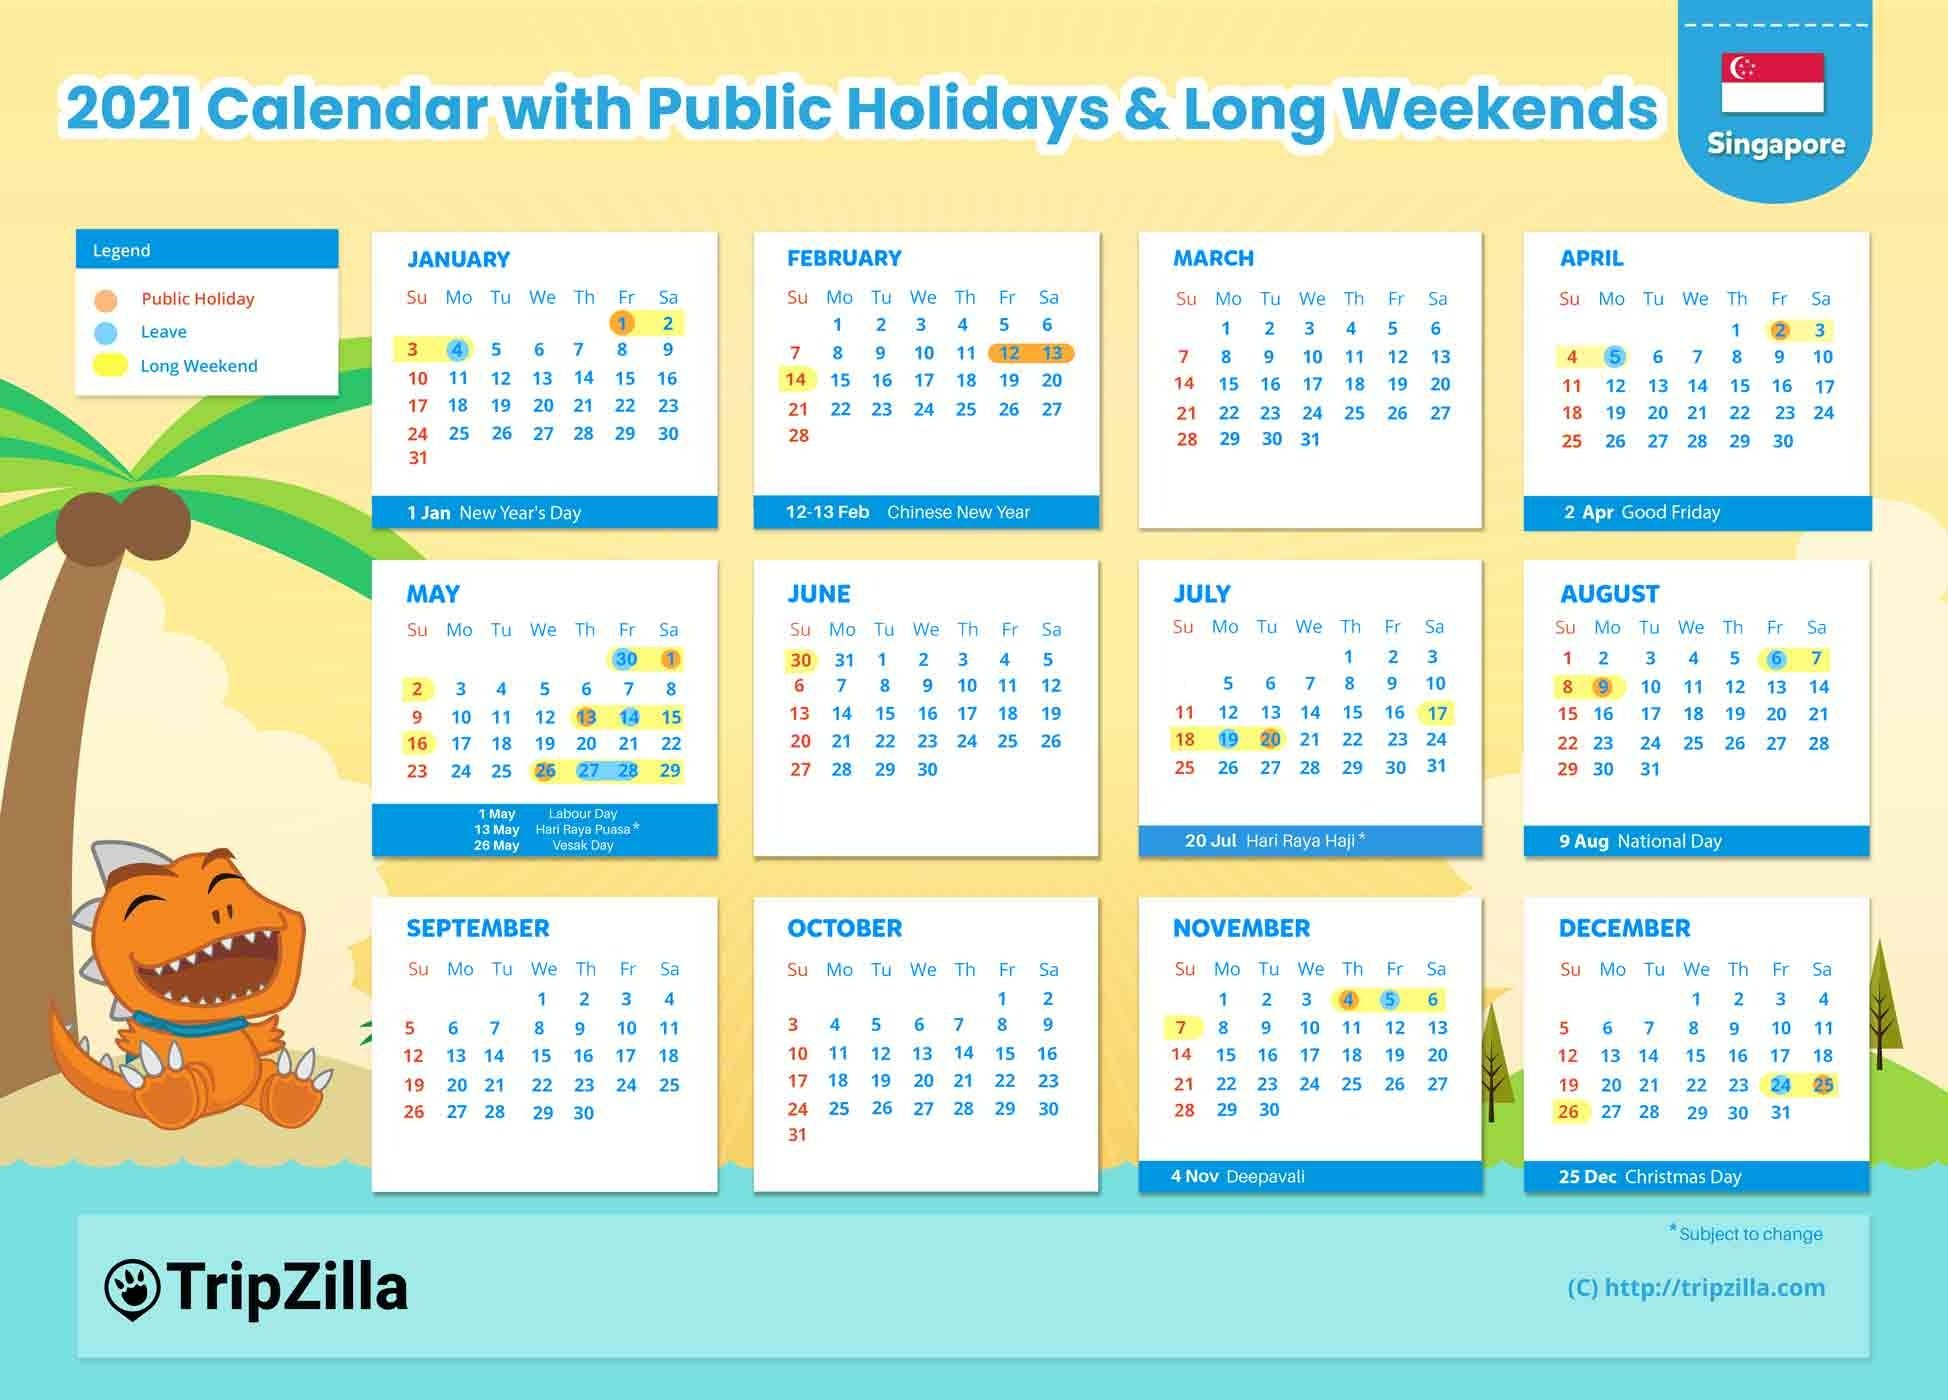 10 Long Weekends In Singapore In 2021 (Bonus Calendar